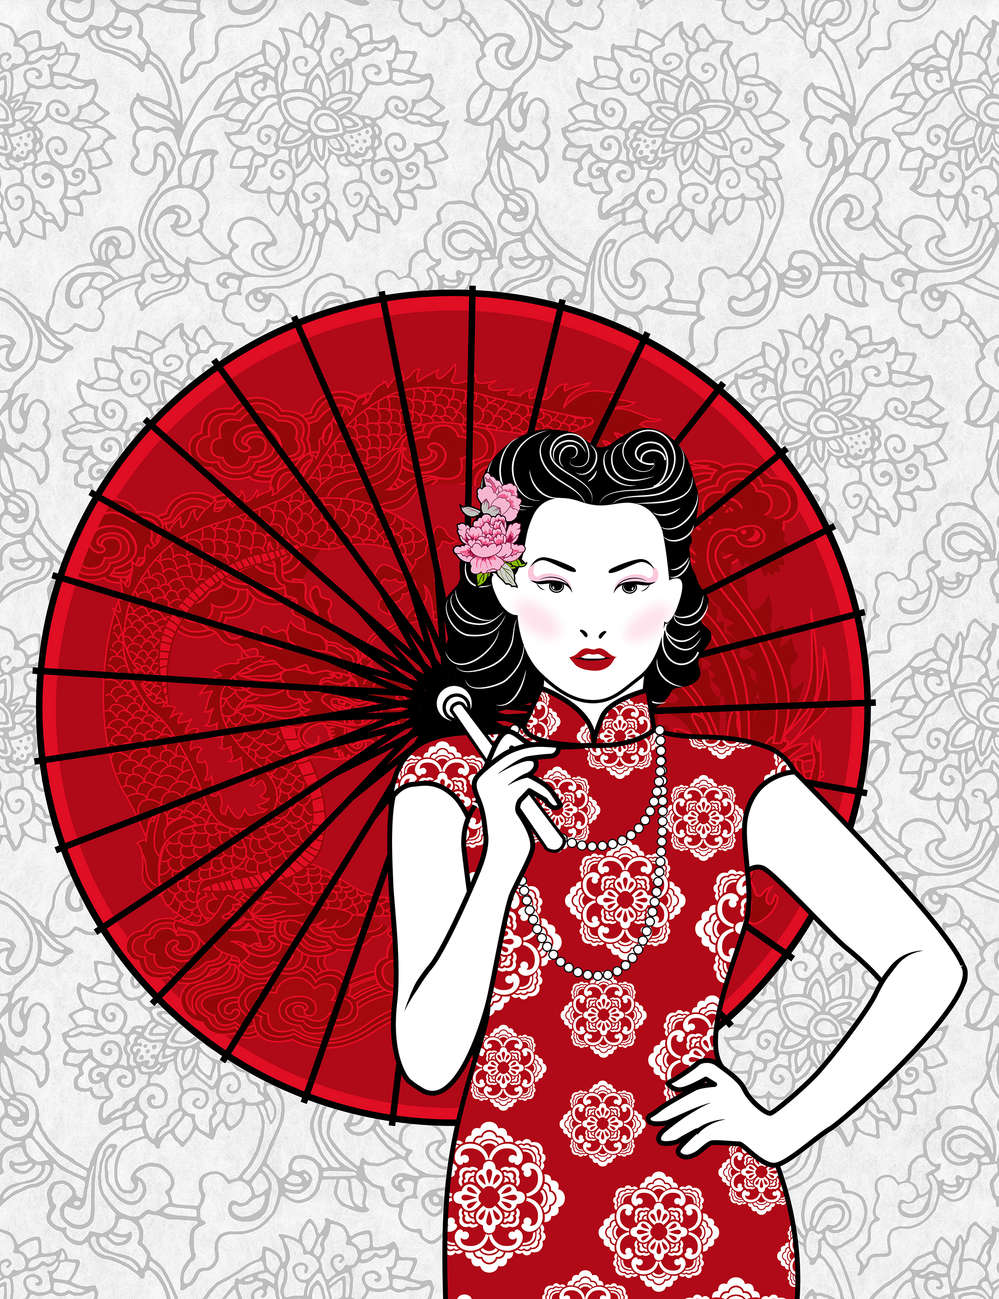             Fotomural Mujer con paraguas, motivo asiático - Tela no tejida lisa de alta calidad
        